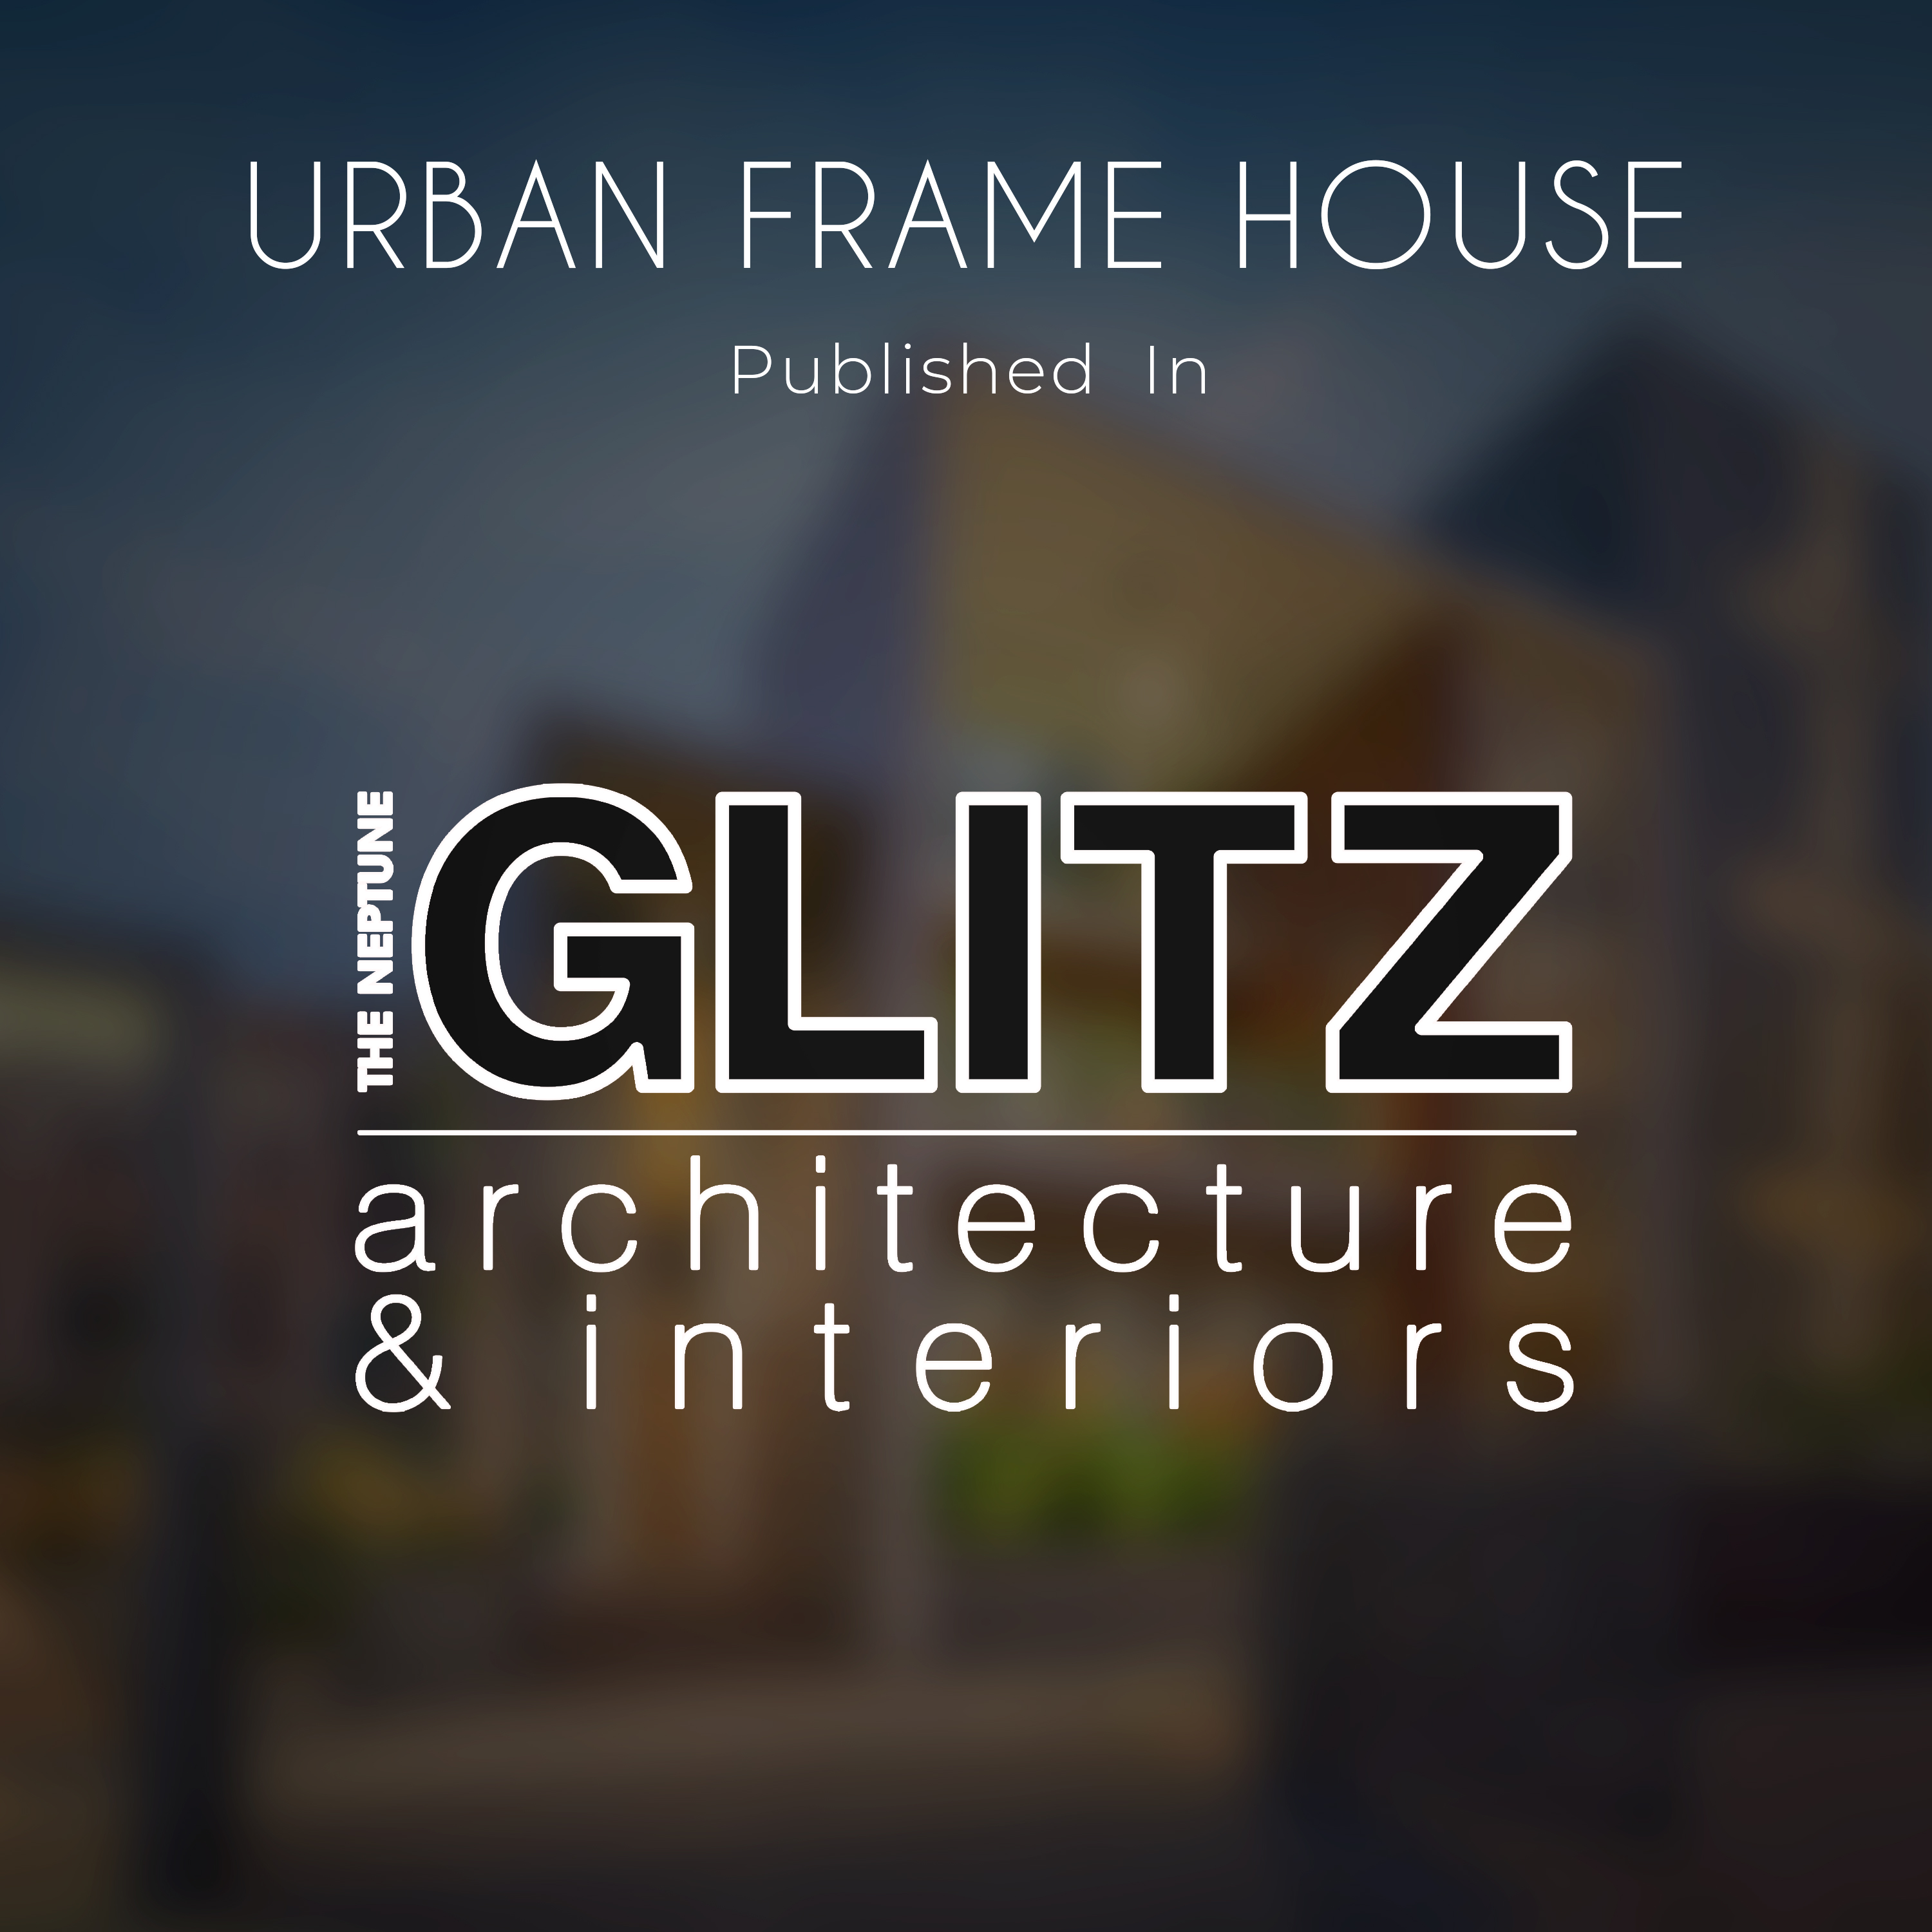 The Neptune Glitz architecture & interiors 2021